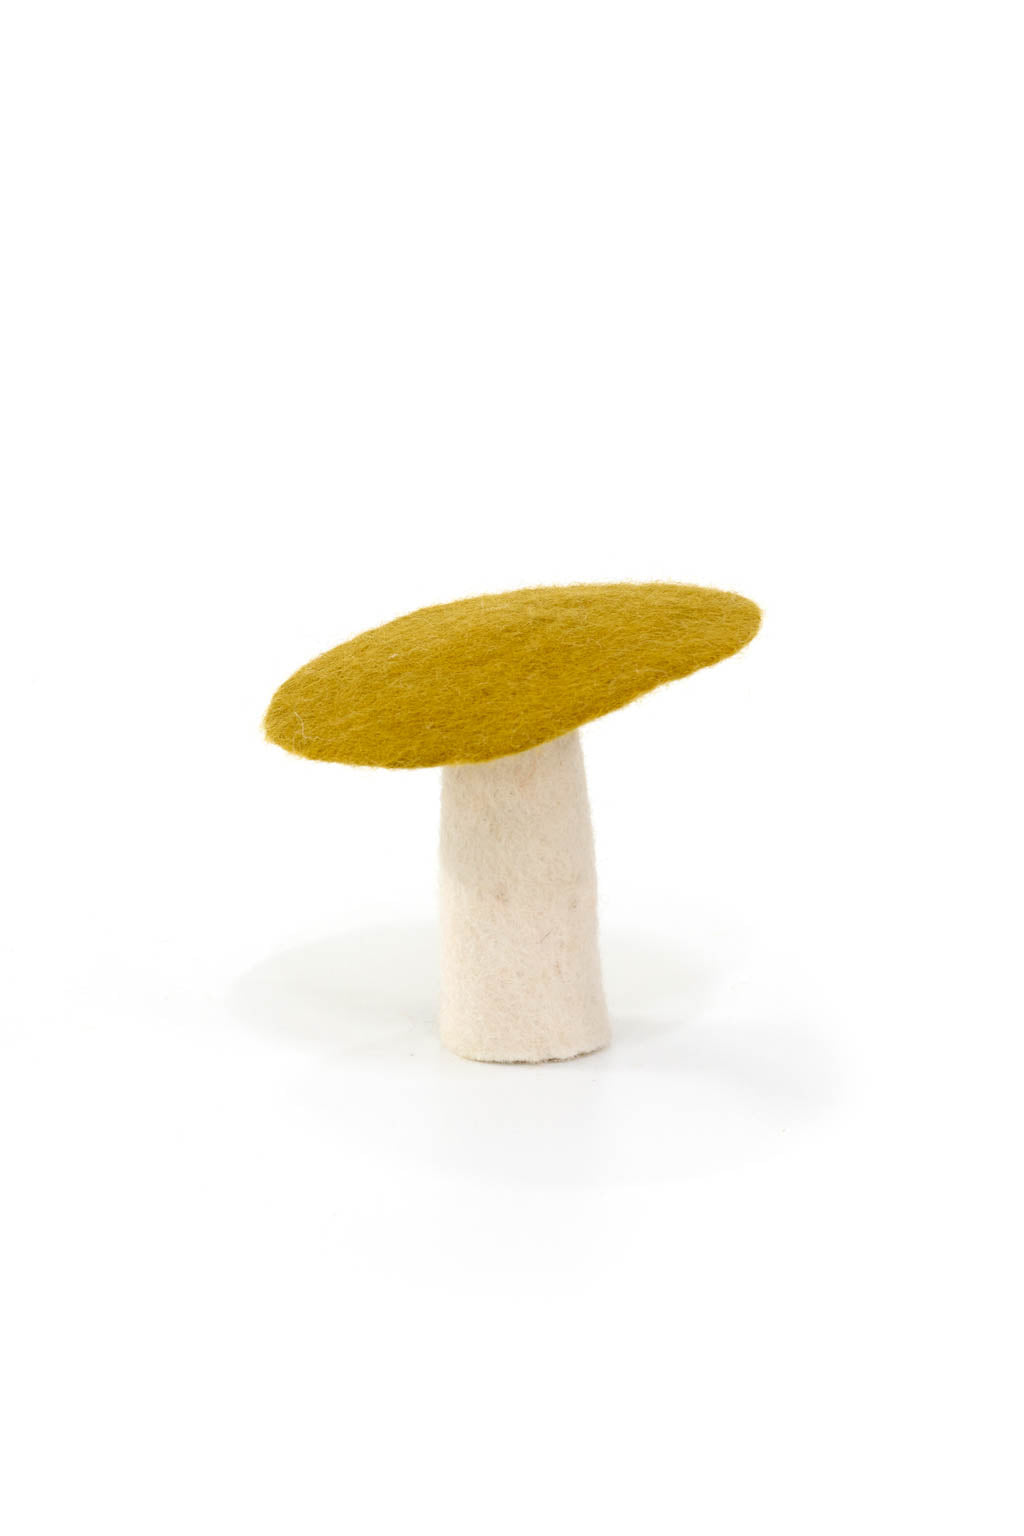 Mushroom - Large 9cm